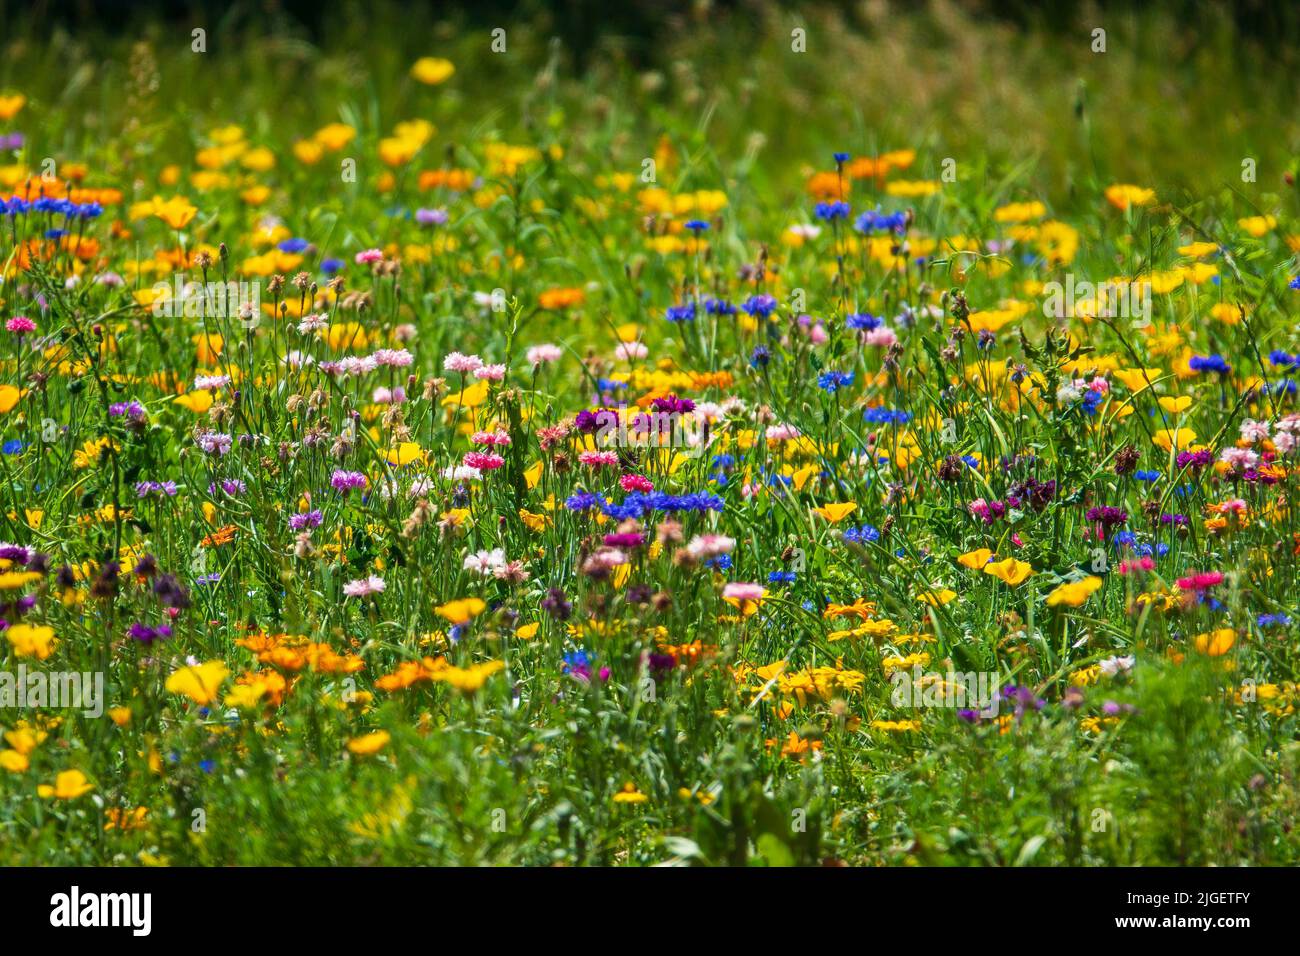 Champ de fleurs sauvages colorées. Prairie ensoleillée d'été pleine de fleurs jaunes, bleues et rouges. Mise au point sélective Banque D'Images